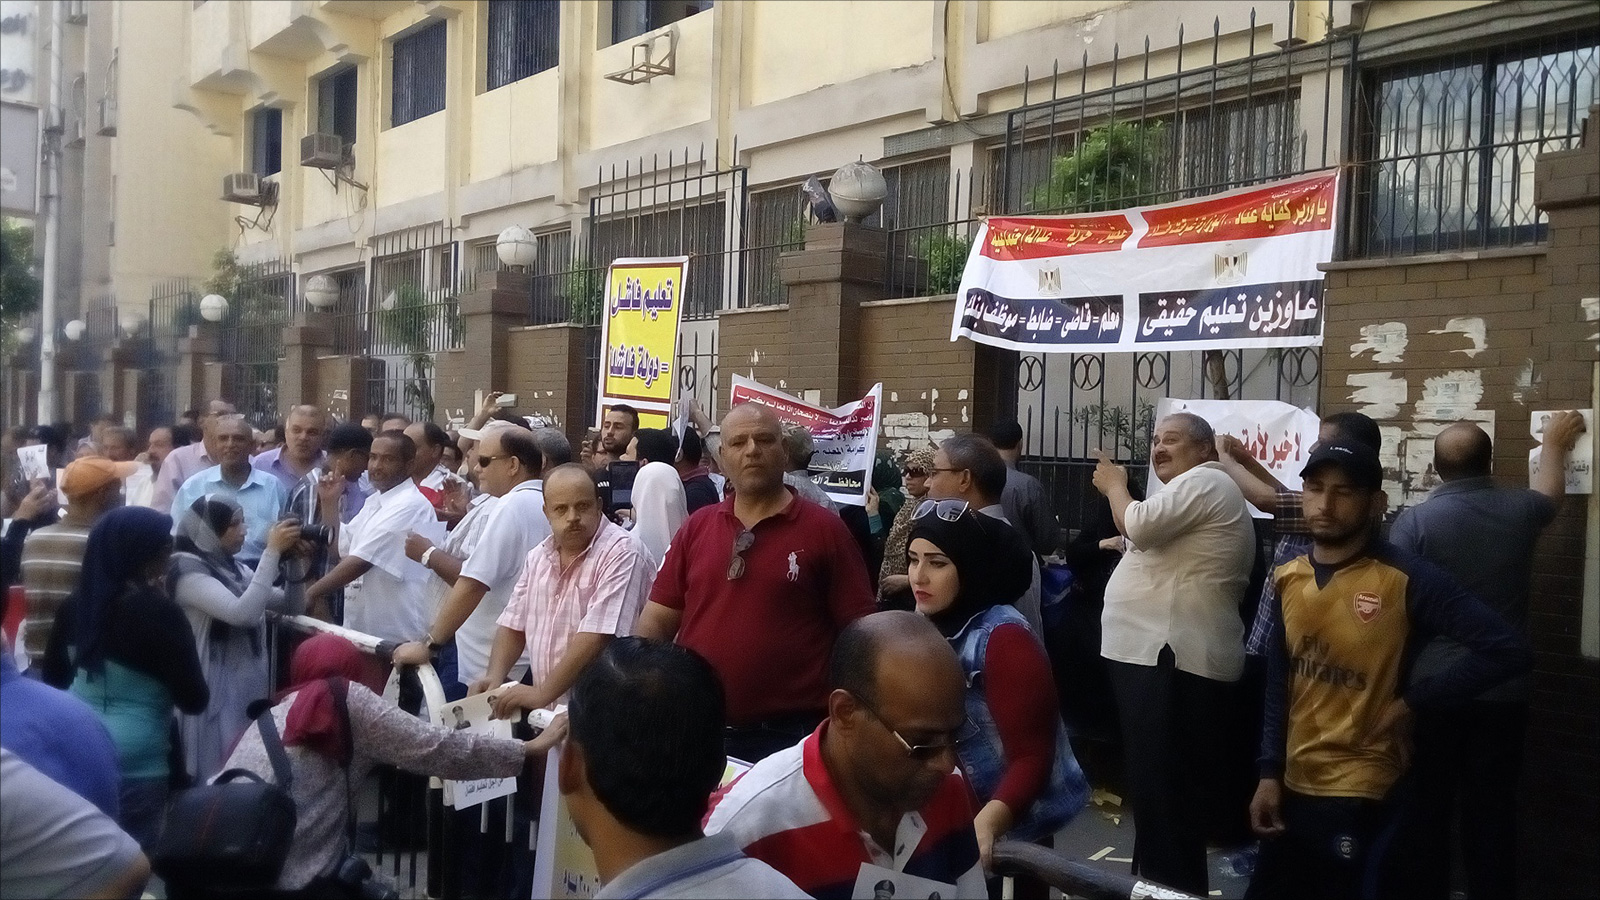 وقفة احتجاجية للمعلمين تطالب بتحسين المنظومة التعليمية (الجزيرة نت)